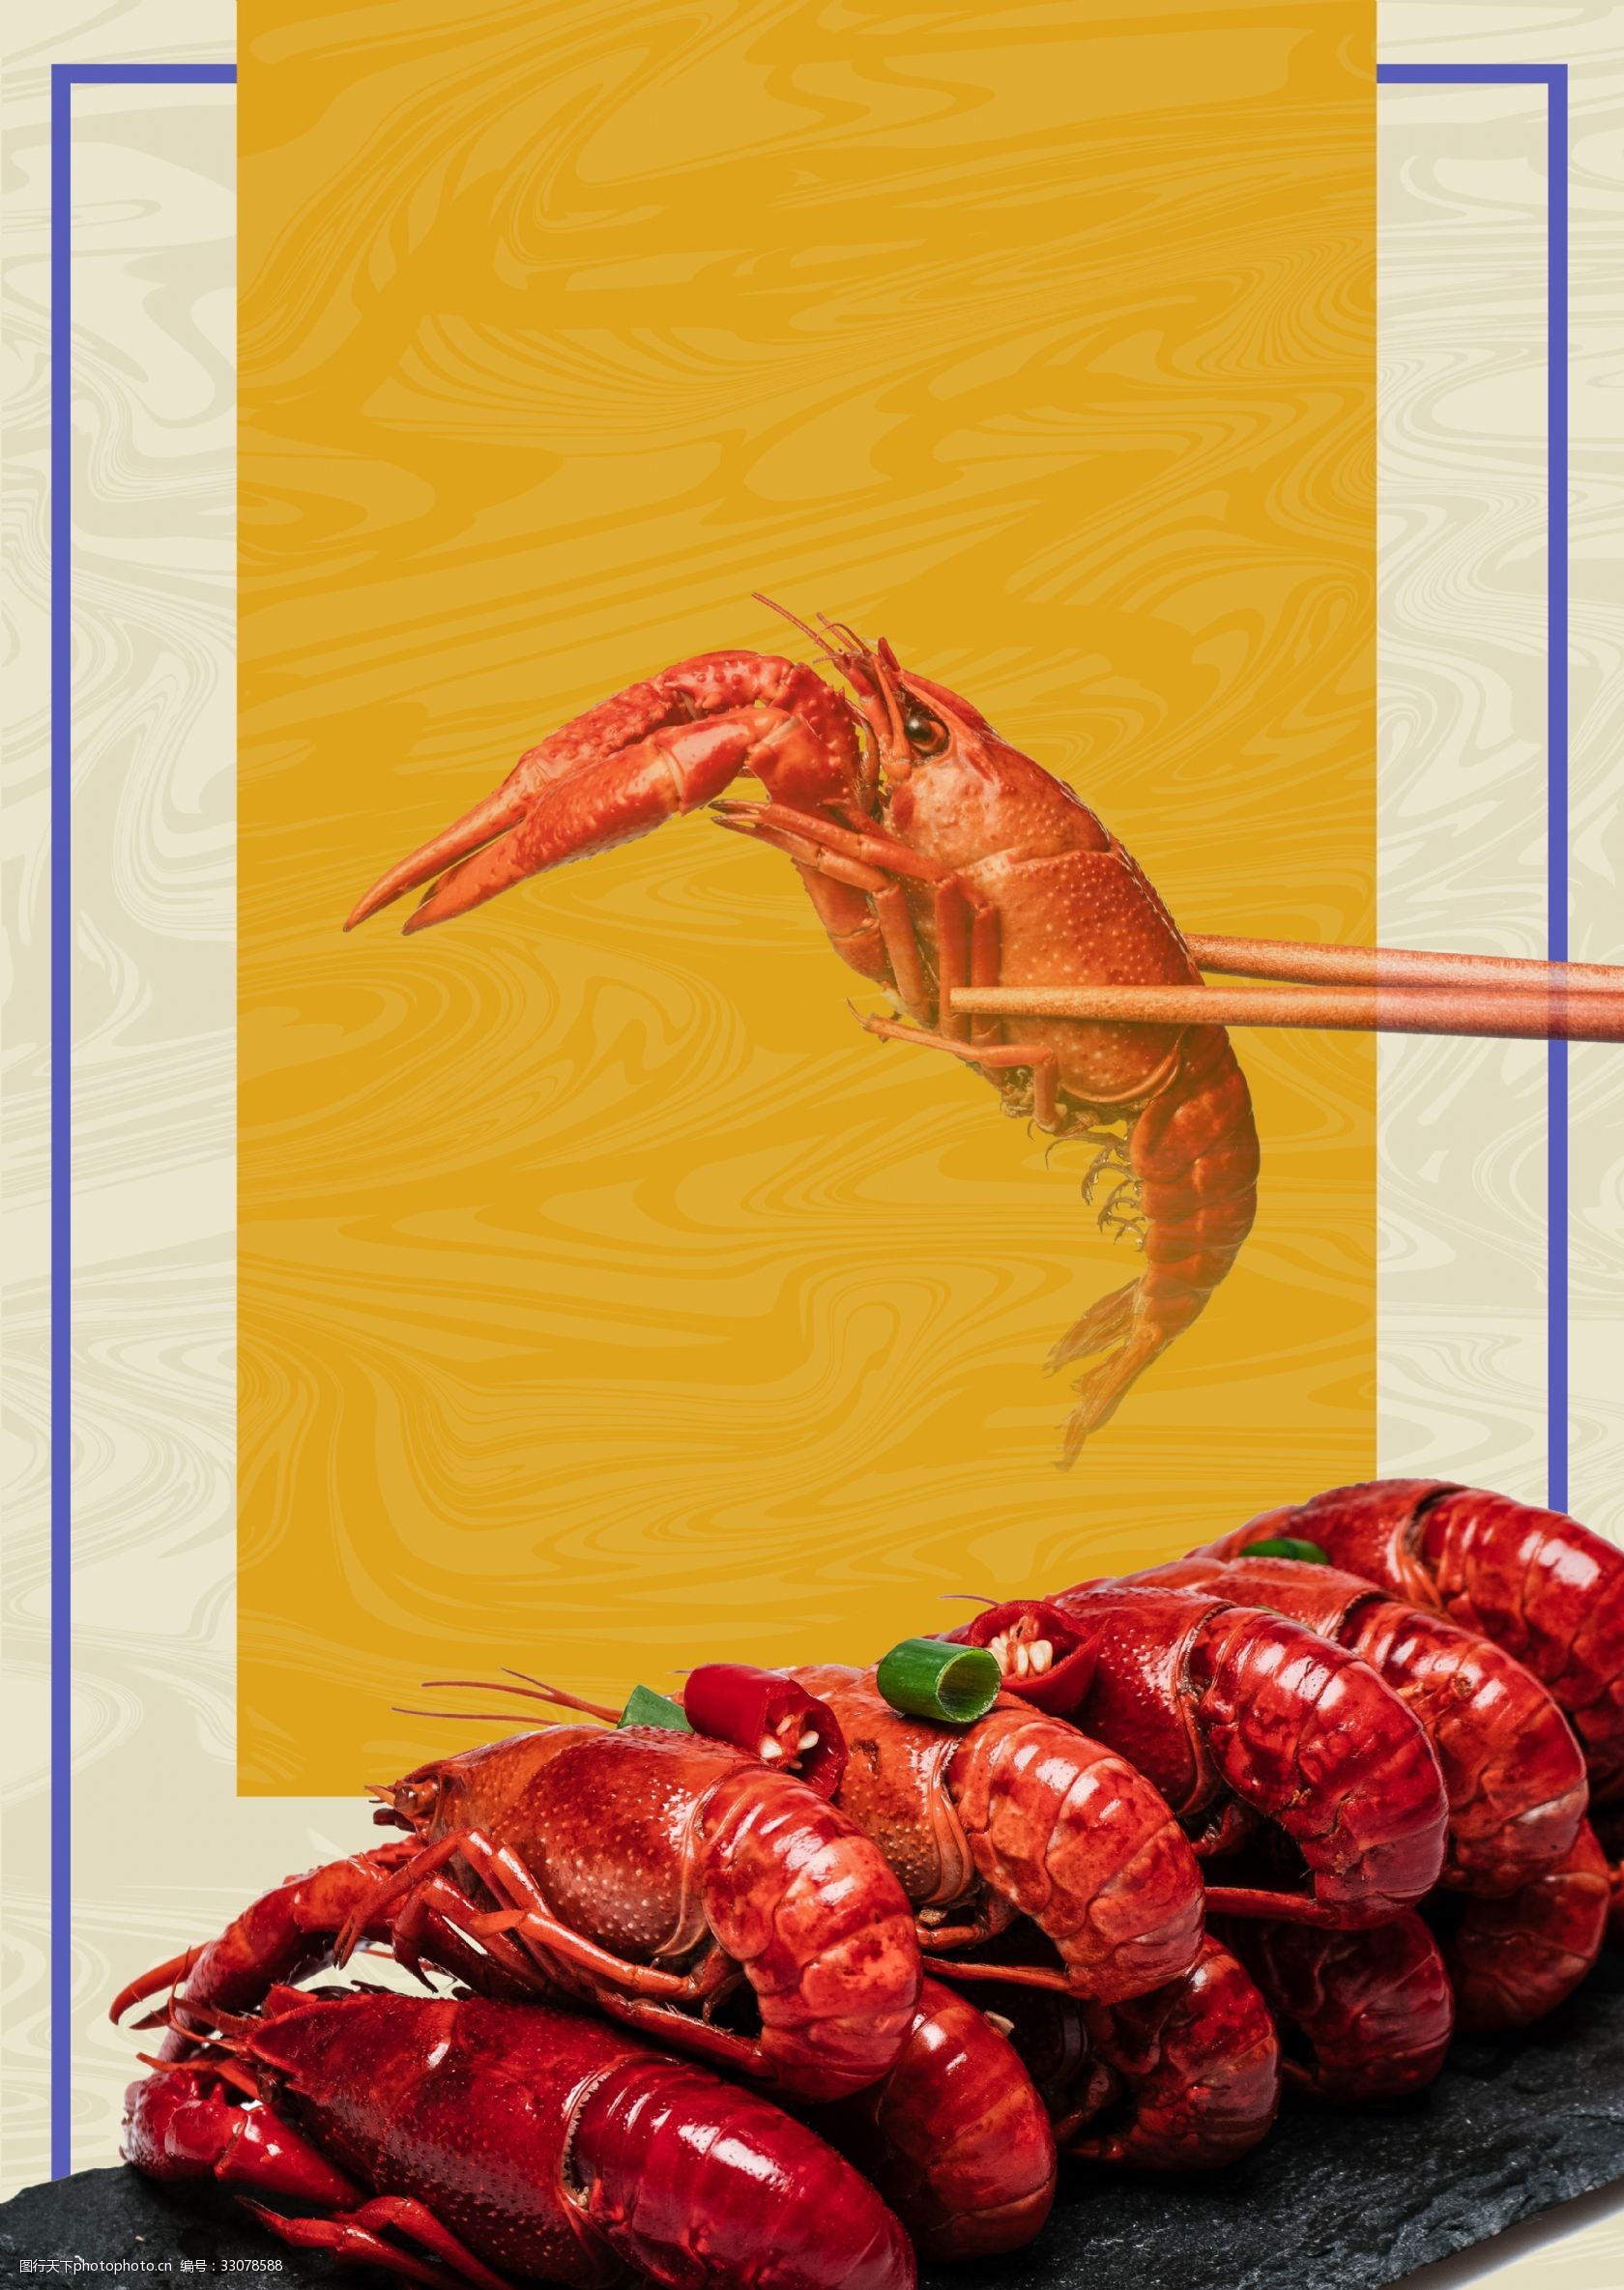 关键词:龙虾美味黄色文艺海报banner背景 美食 黄色背景 简约风 龙虾